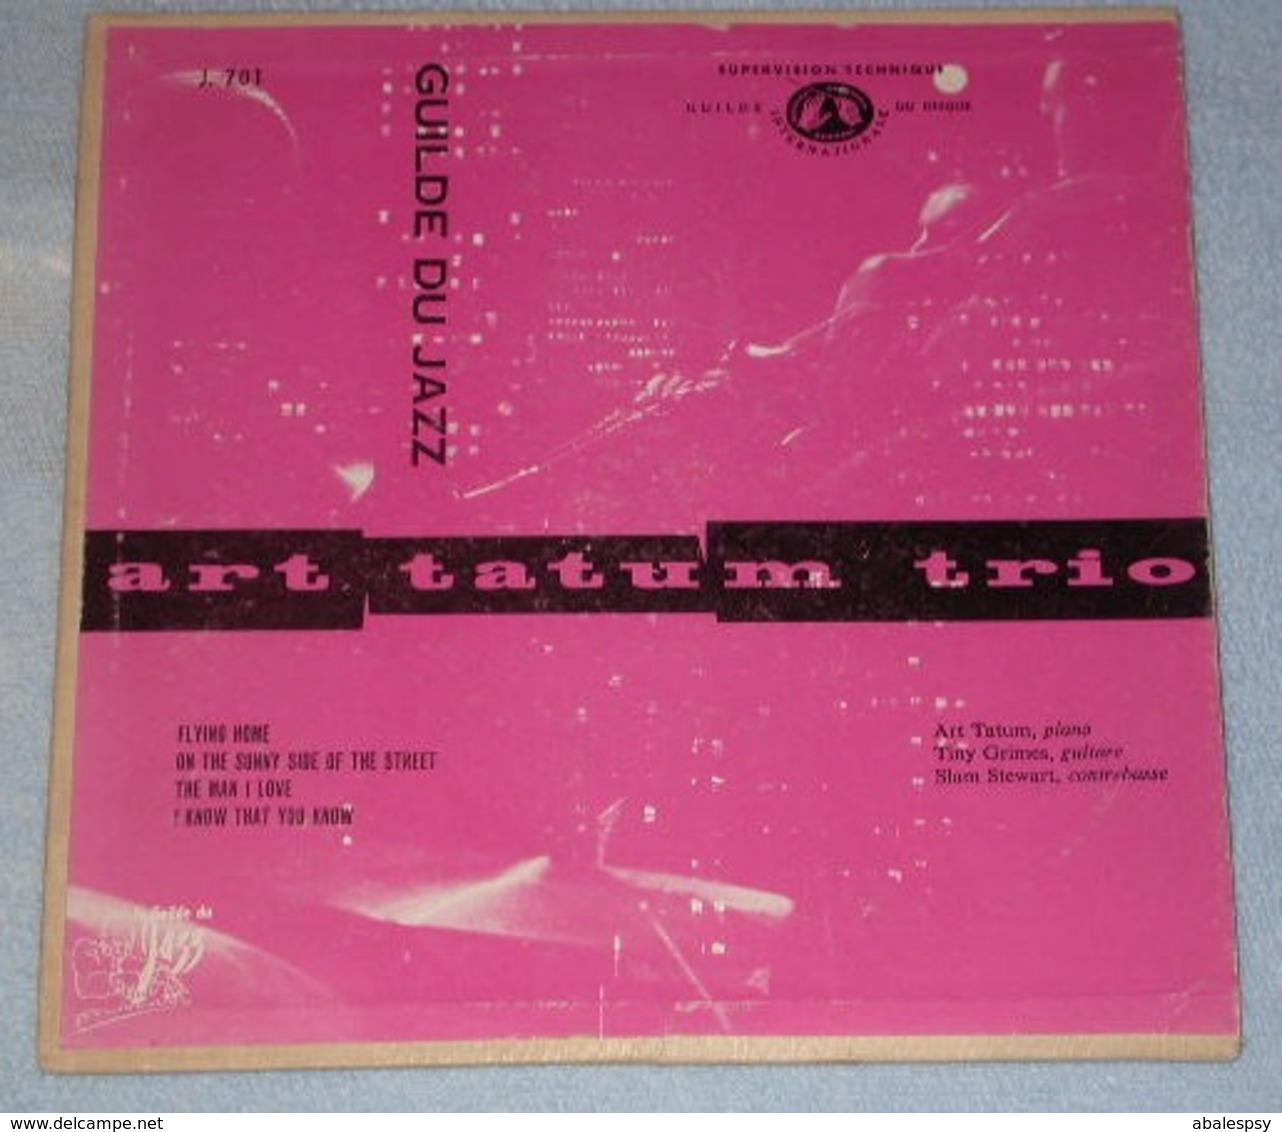 Art Tatum Trio 457 Flying Home (guilde Du Jazz J.701 FR) VG++ VG - Jazz